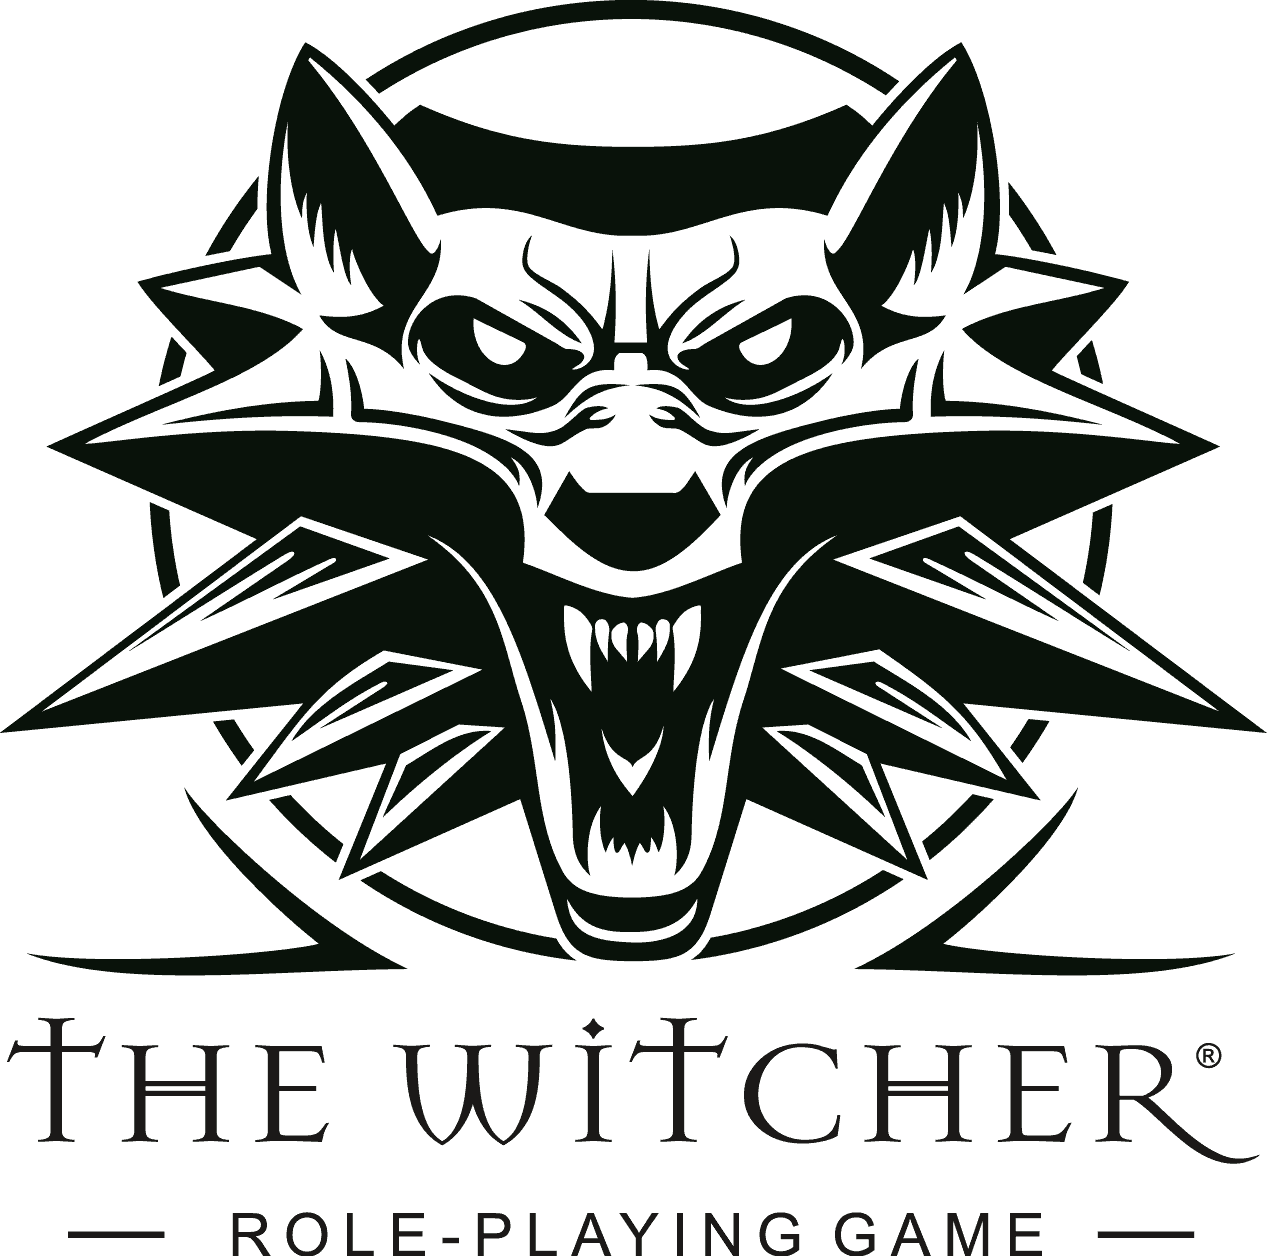 Witcher logo